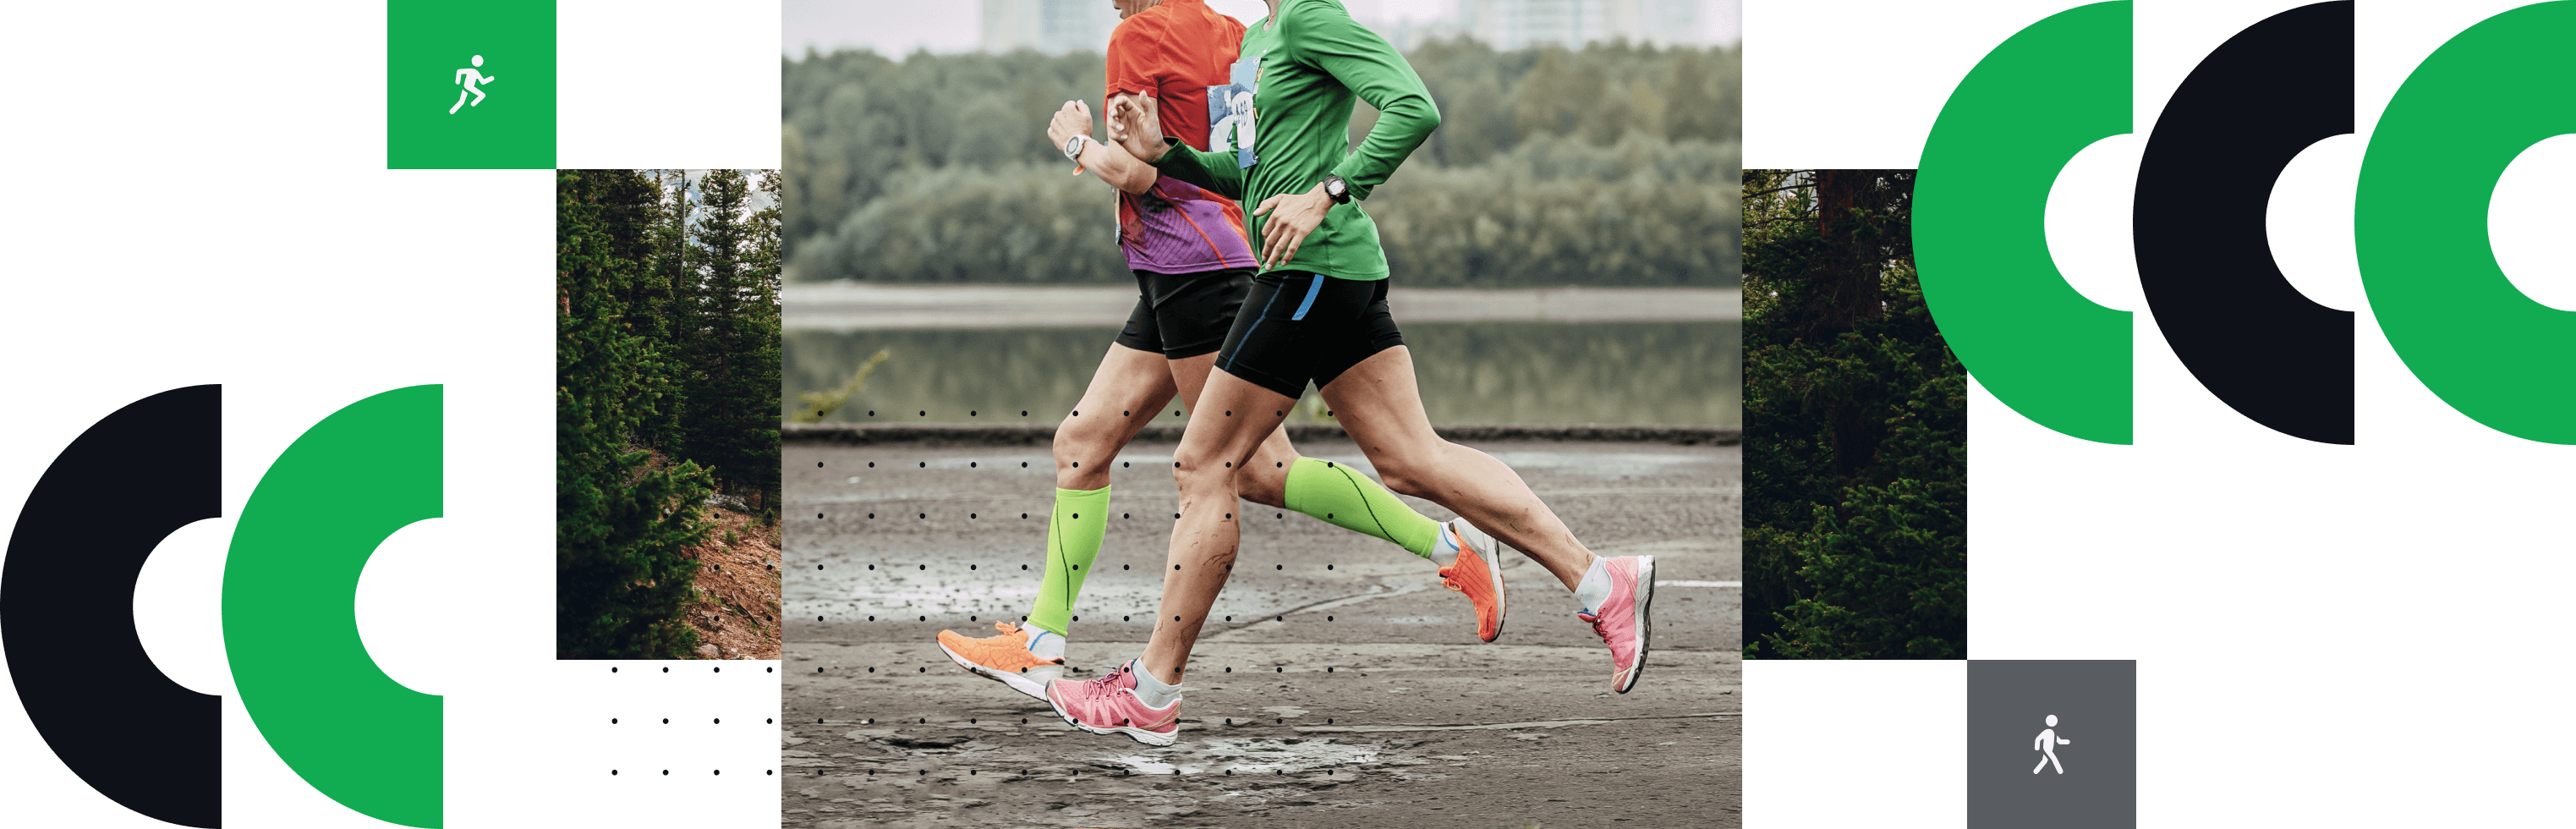 deux personnes qui courent un marathon